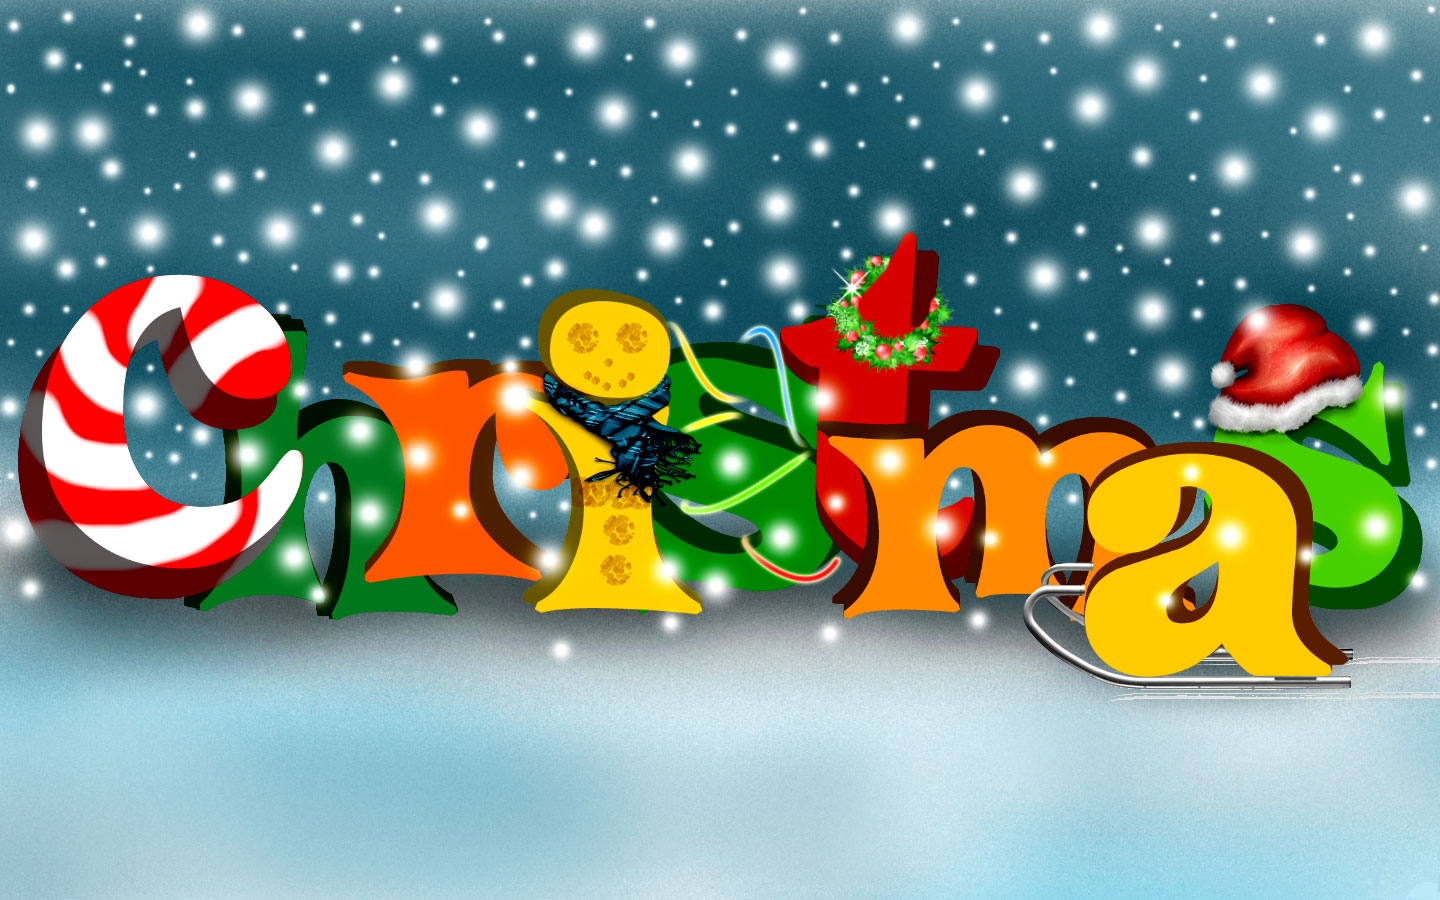 Top 10 Christmas Wallpaper Hd - Cool Christmas Backgrounds For Kids , HD Wallpaper & Backgrounds